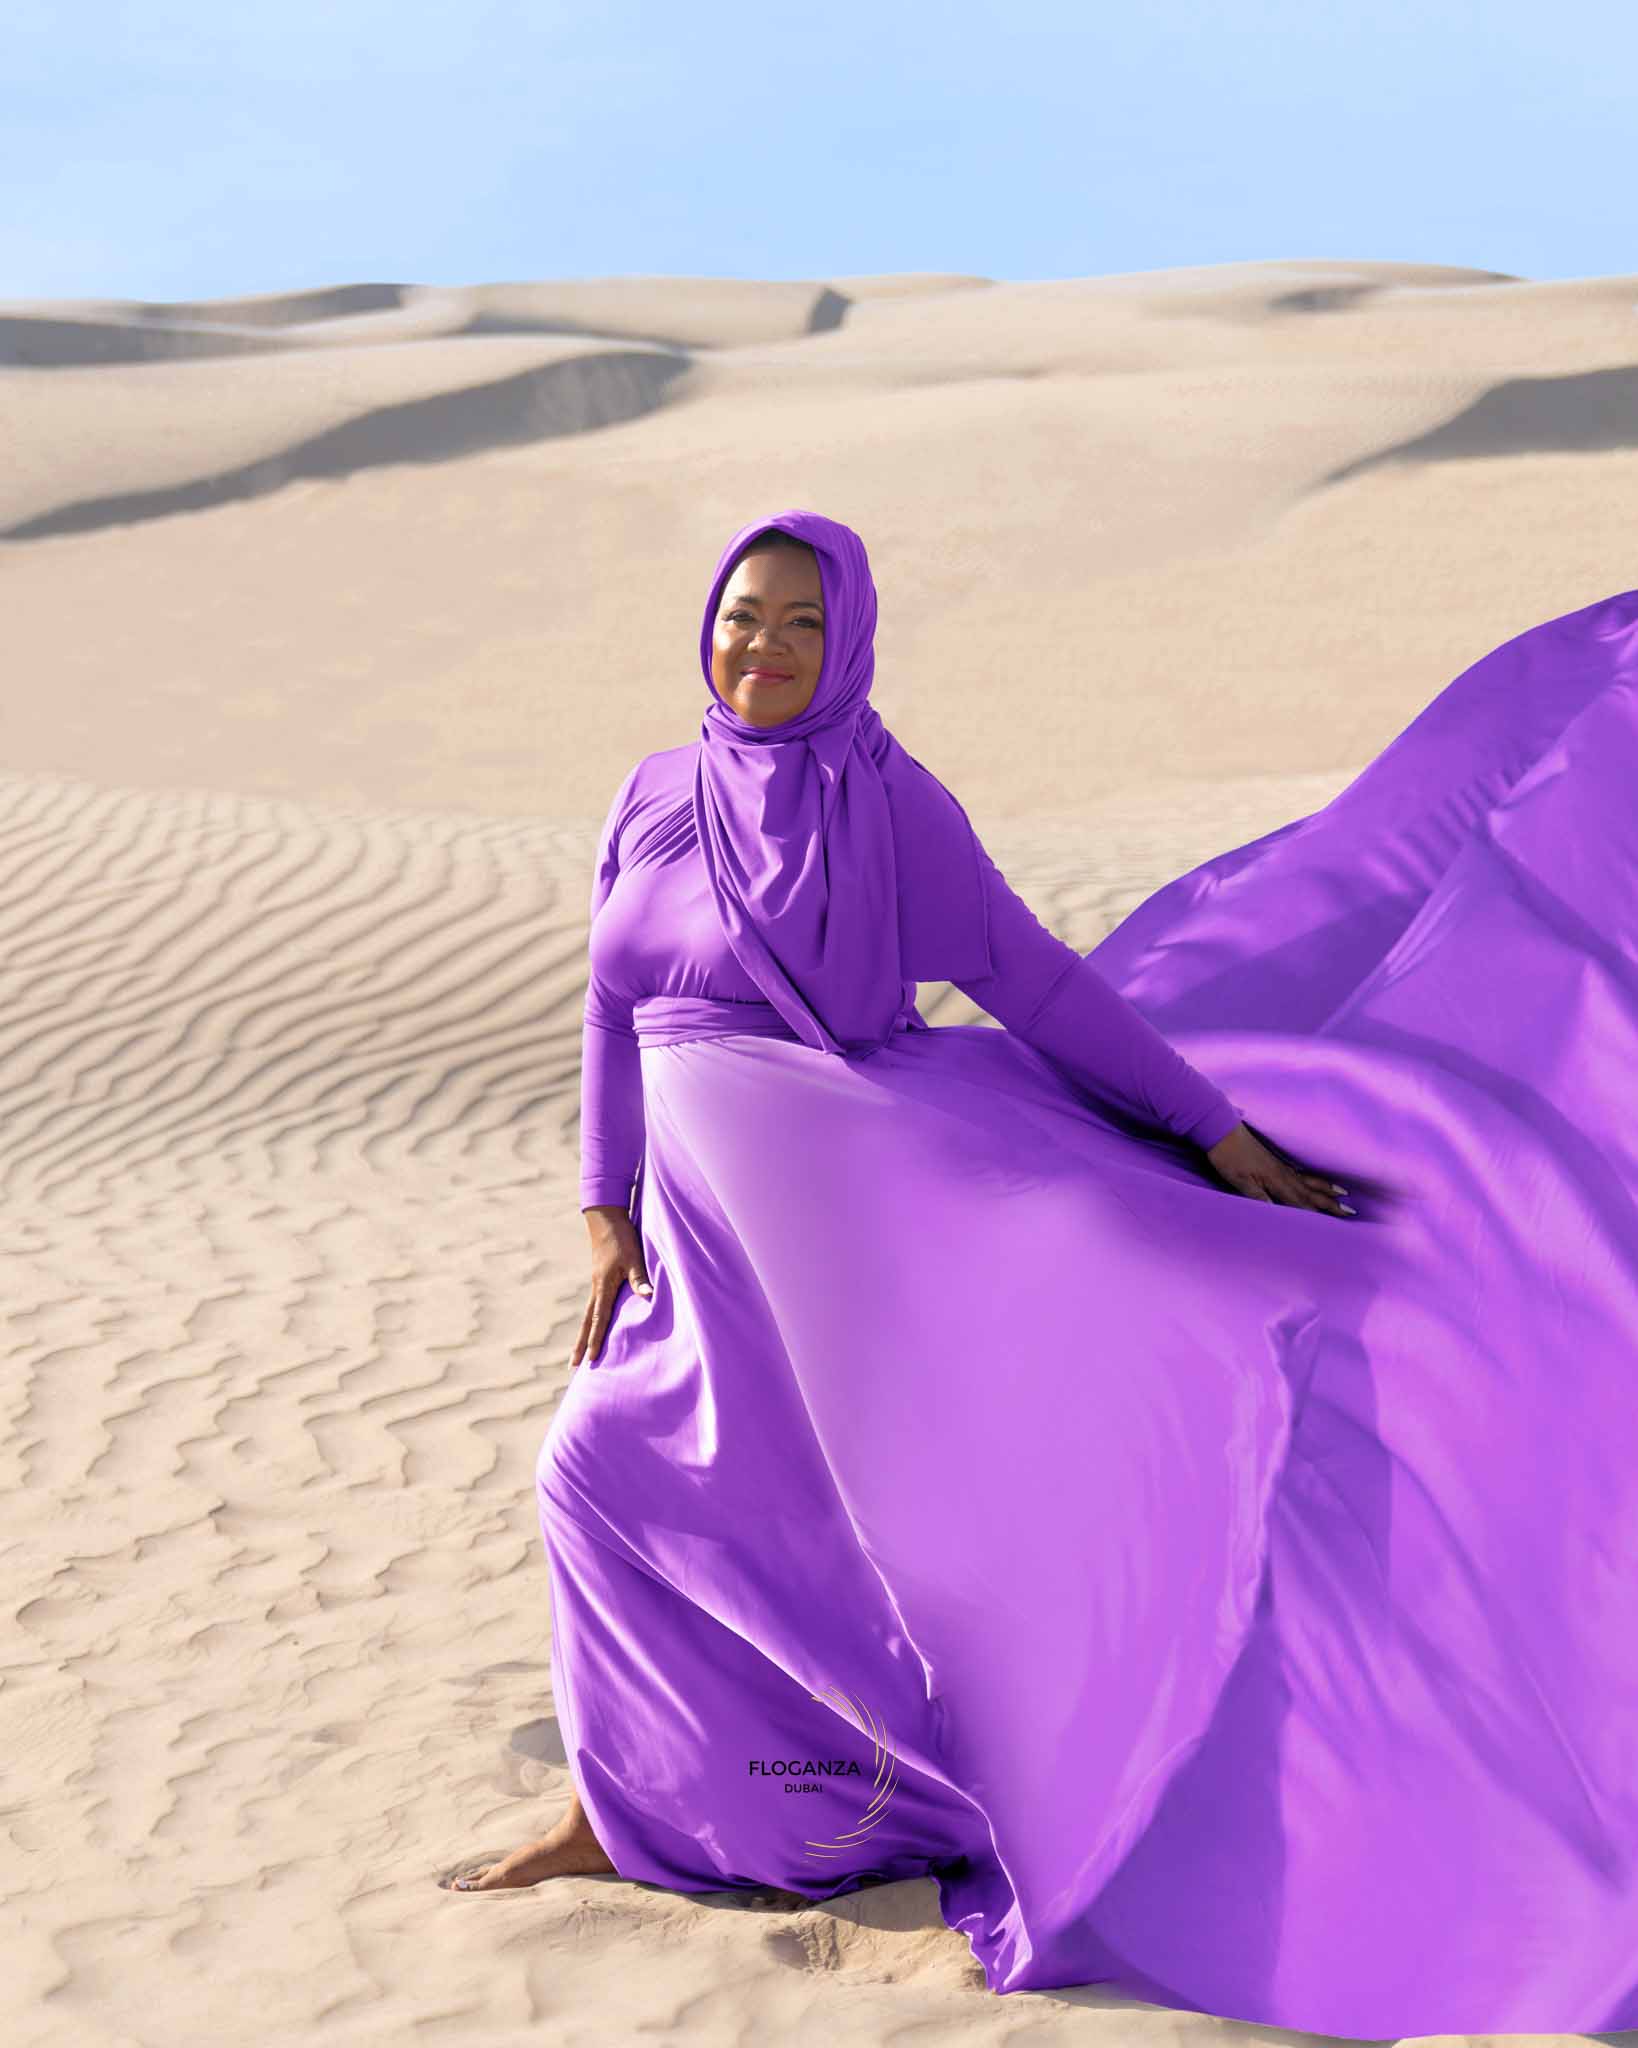 modest flying dress photoshoot for women